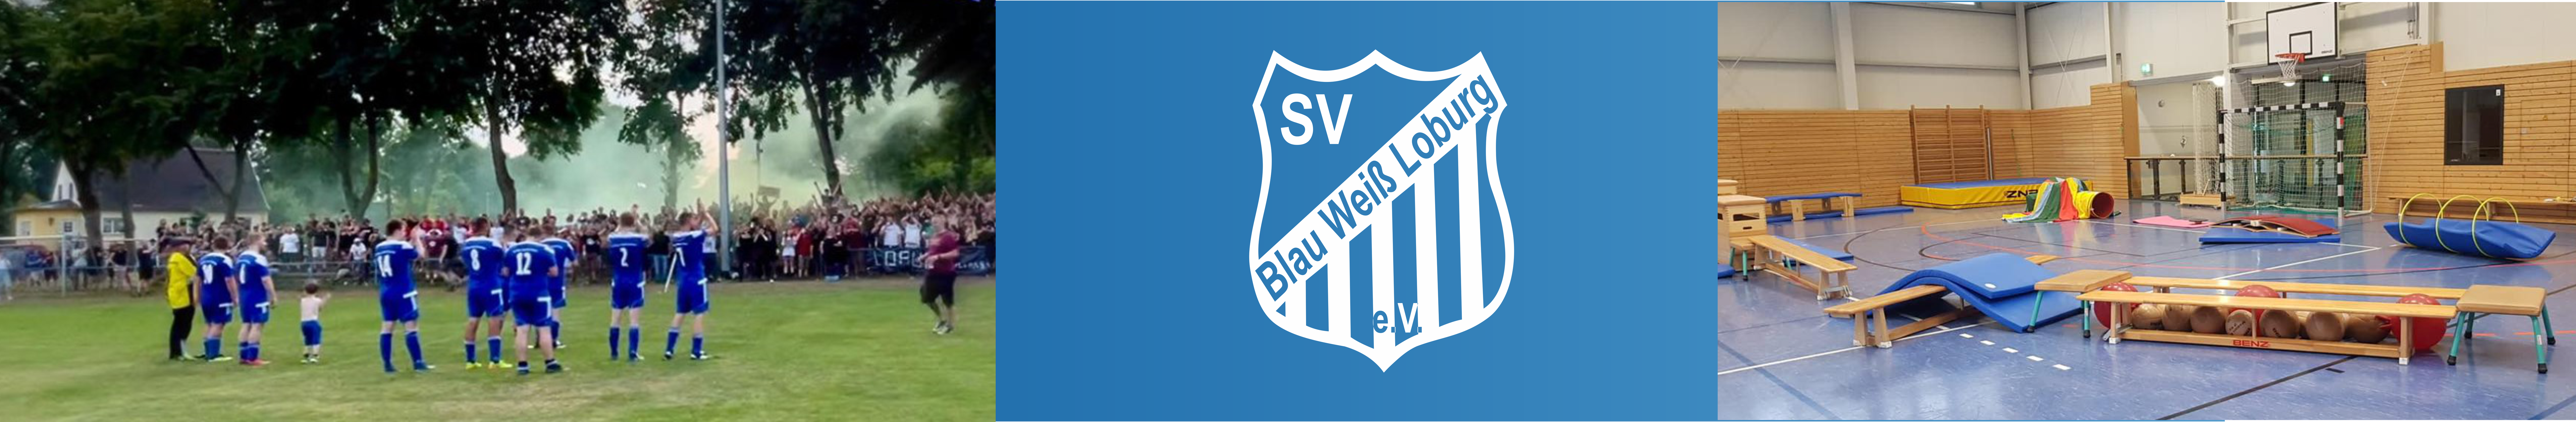 SV Blau-Weiß Loburg Title Image